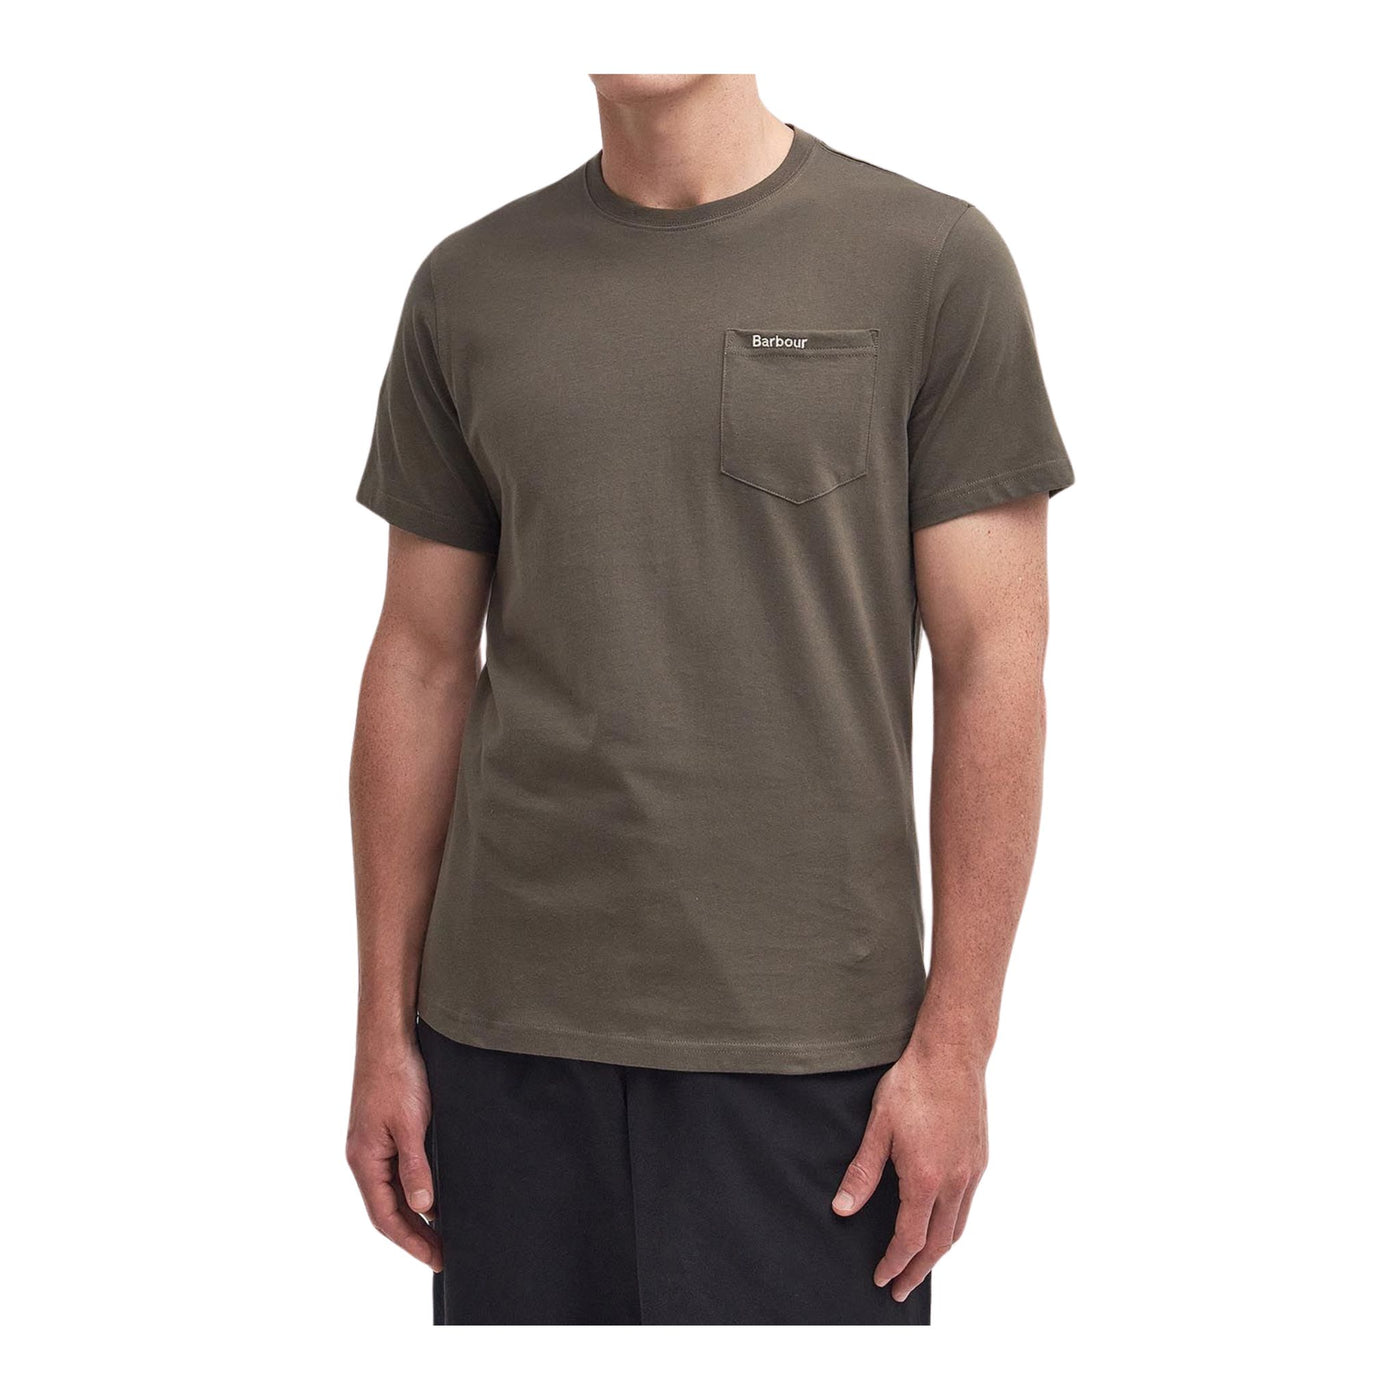  T-shirt Uomo realizzata interamente in cotone con logo a contrasto 